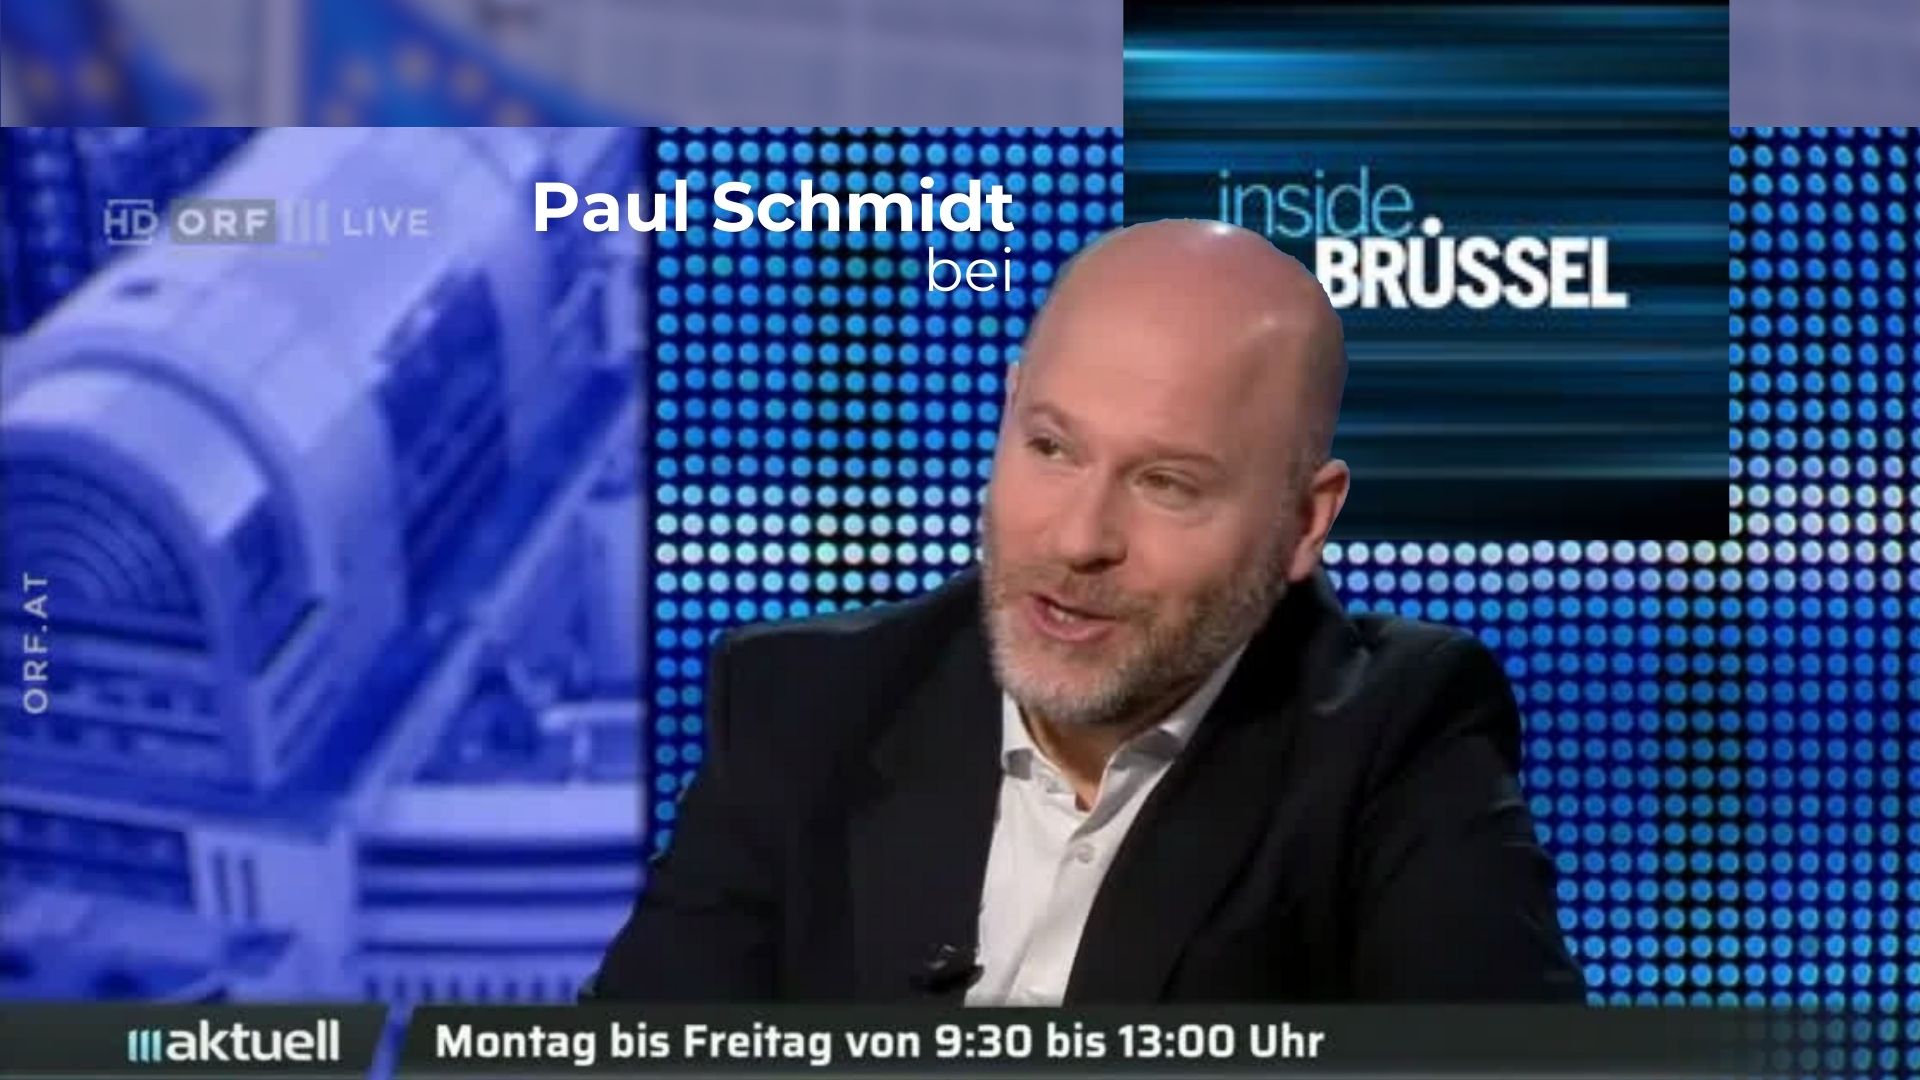 Paul Schmidt zu Gast bei "Inside Brüssel"